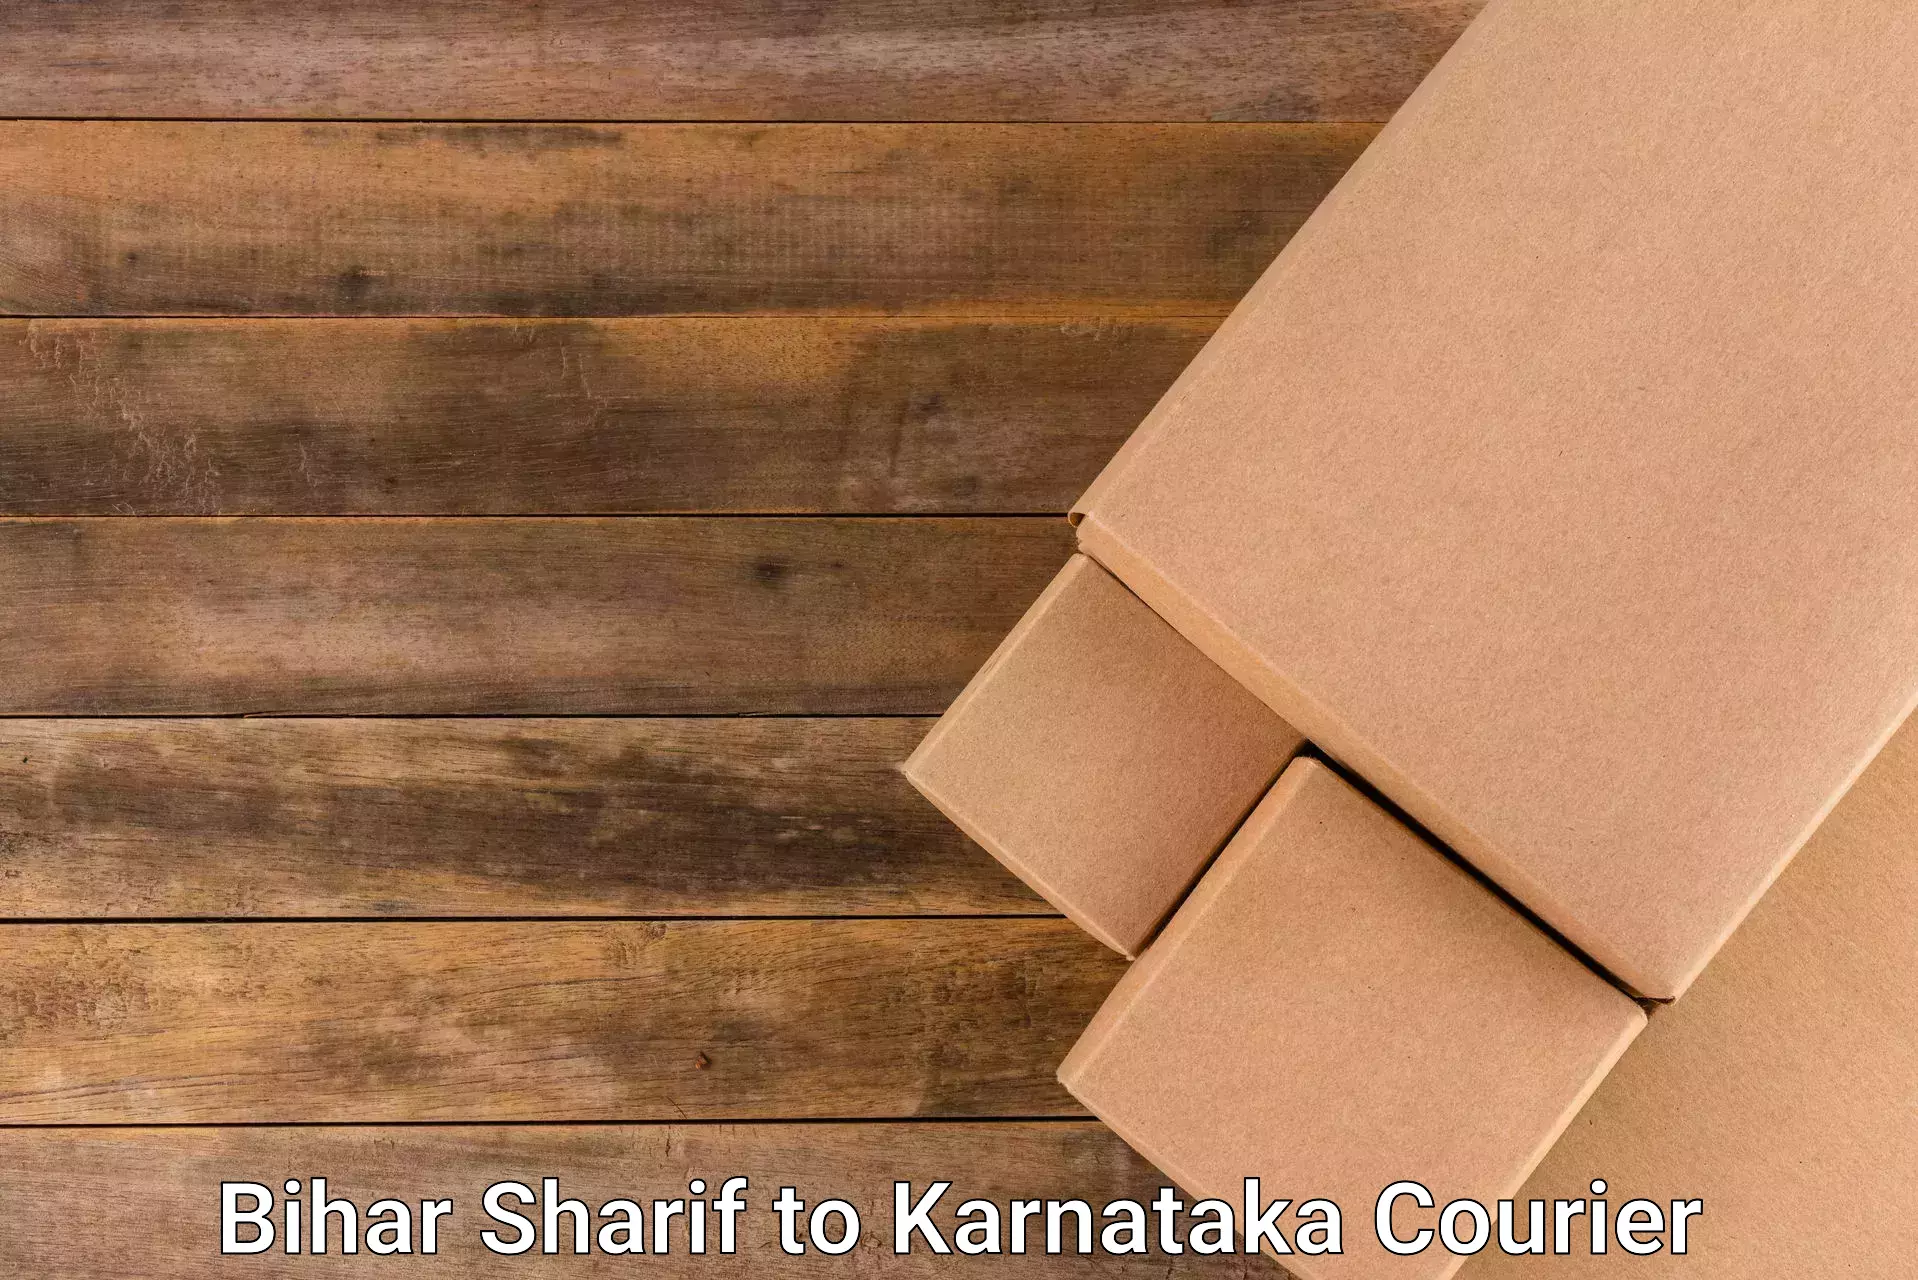 Modern courier technology Bihar Sharif to Karnataka